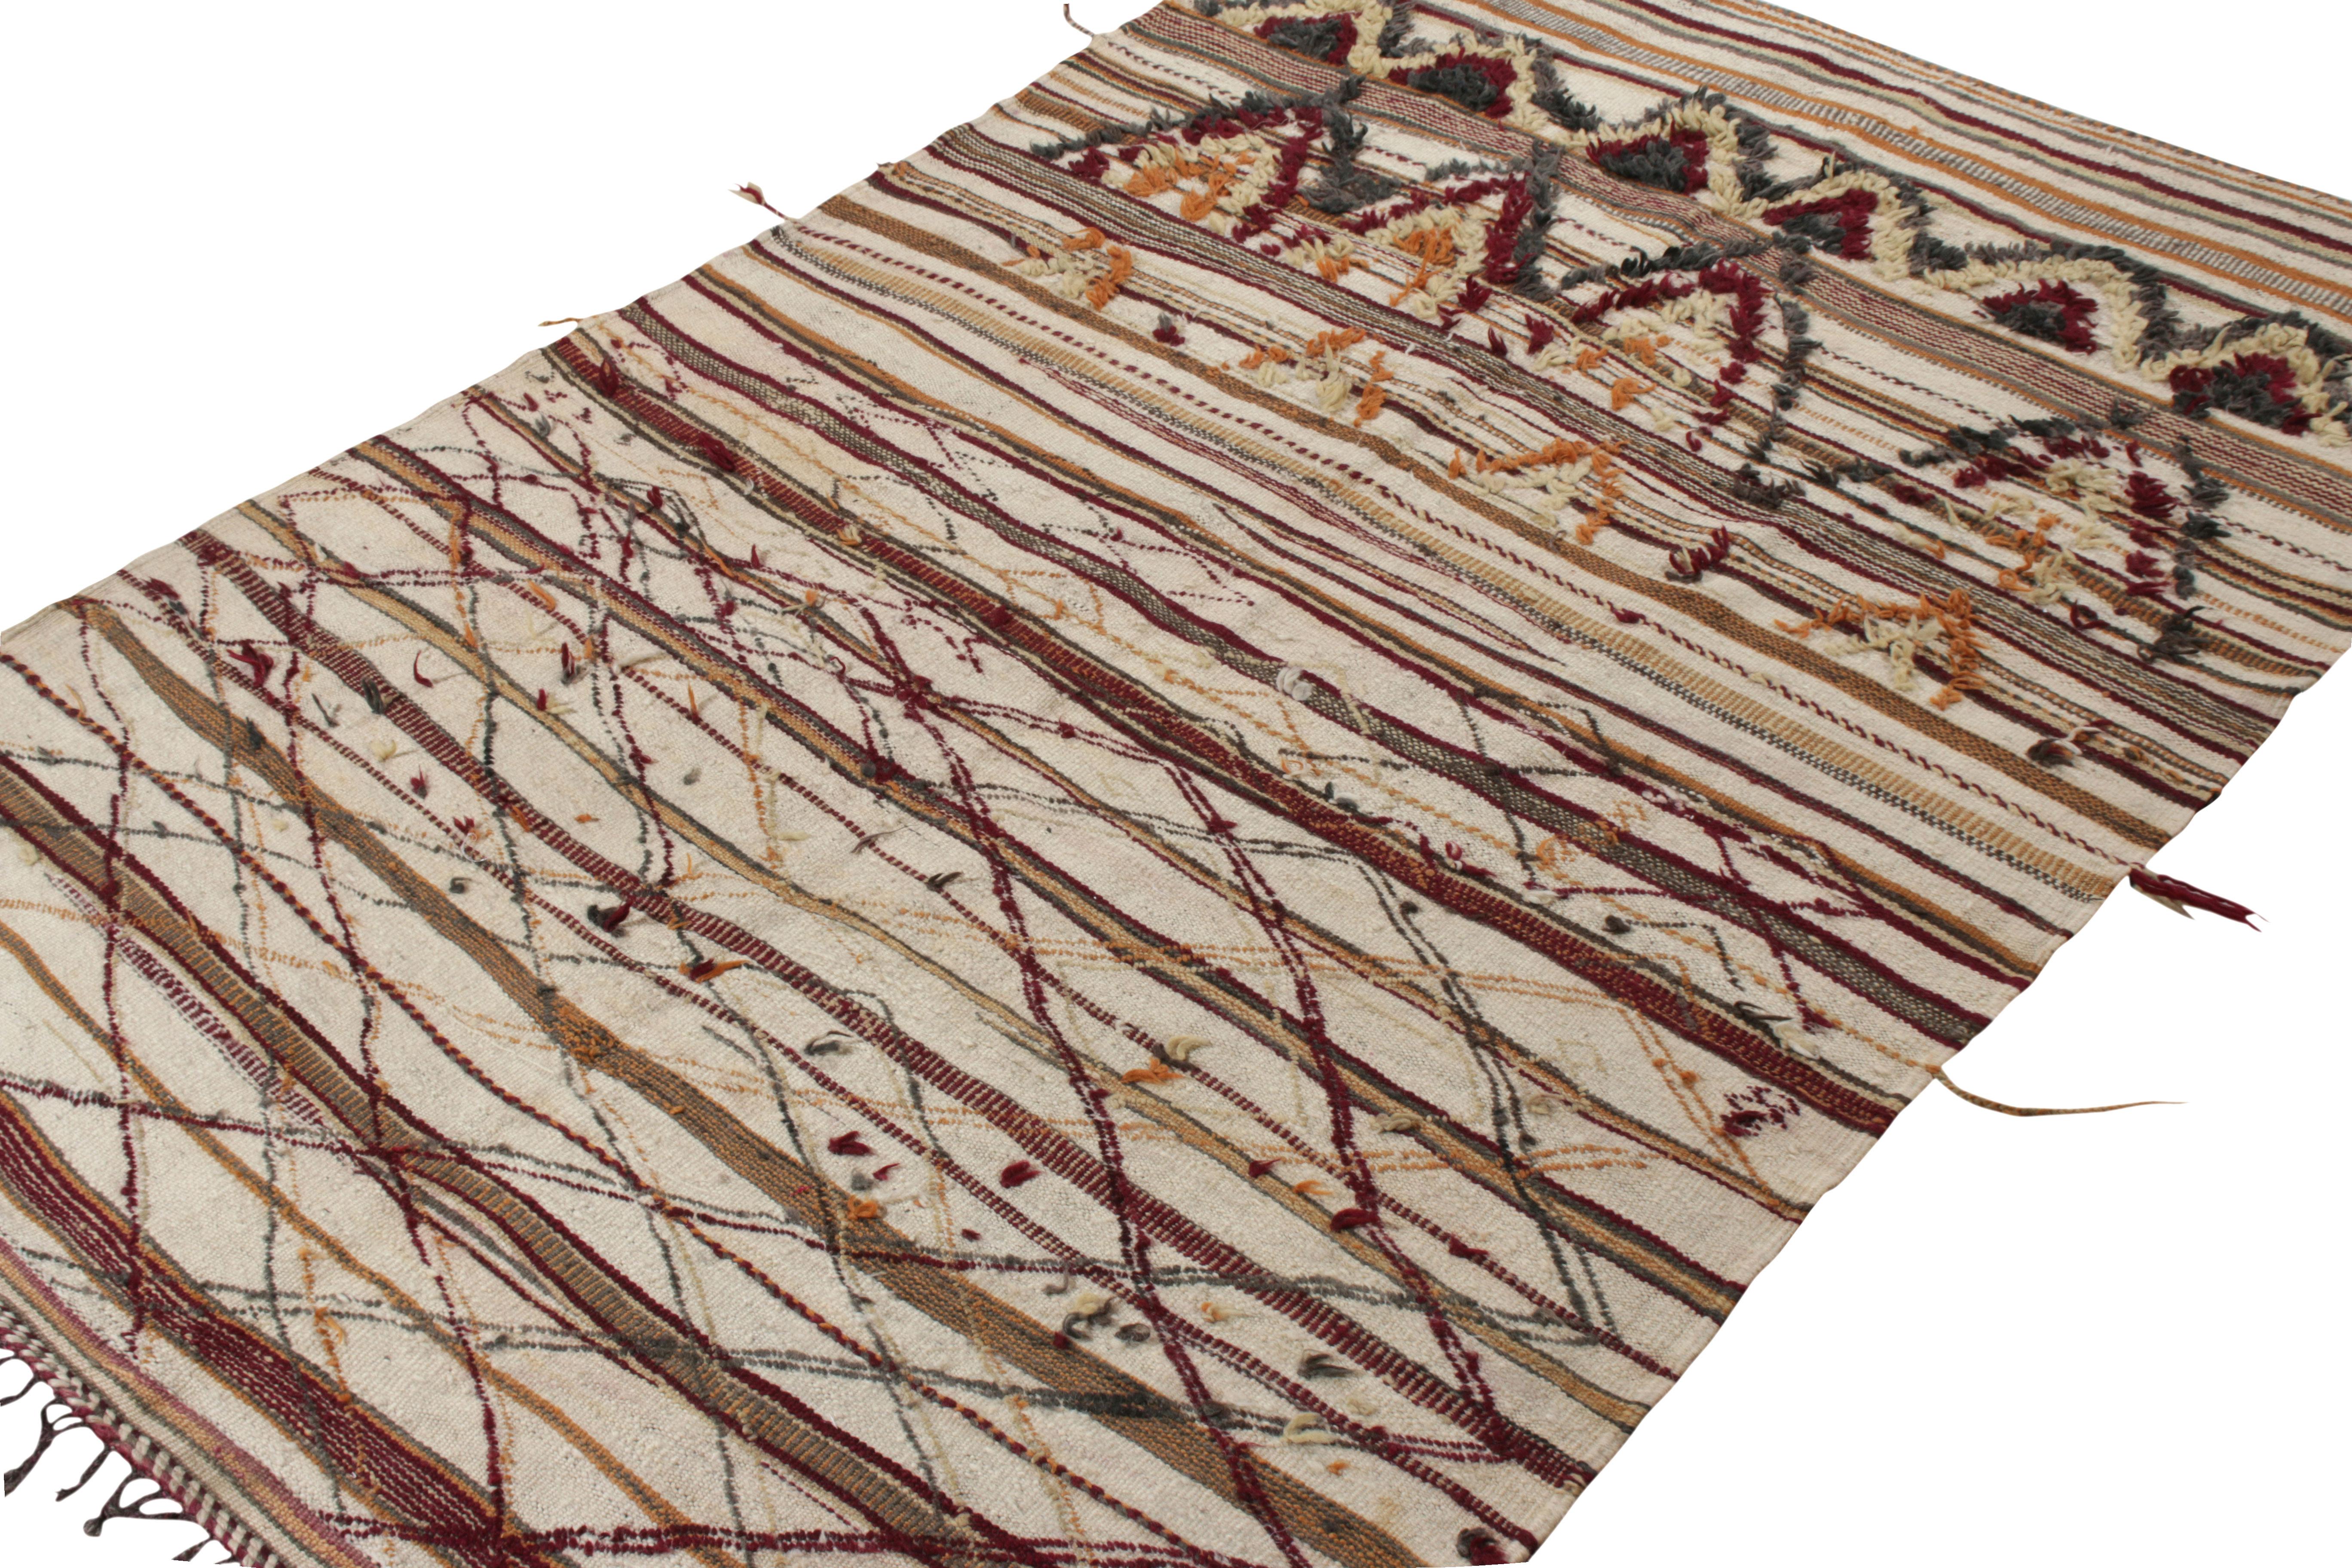 Tribal Vintage Berber rug in Beige-Brown, High-Low Geometric Pattern by Rug & Kilim For Sale